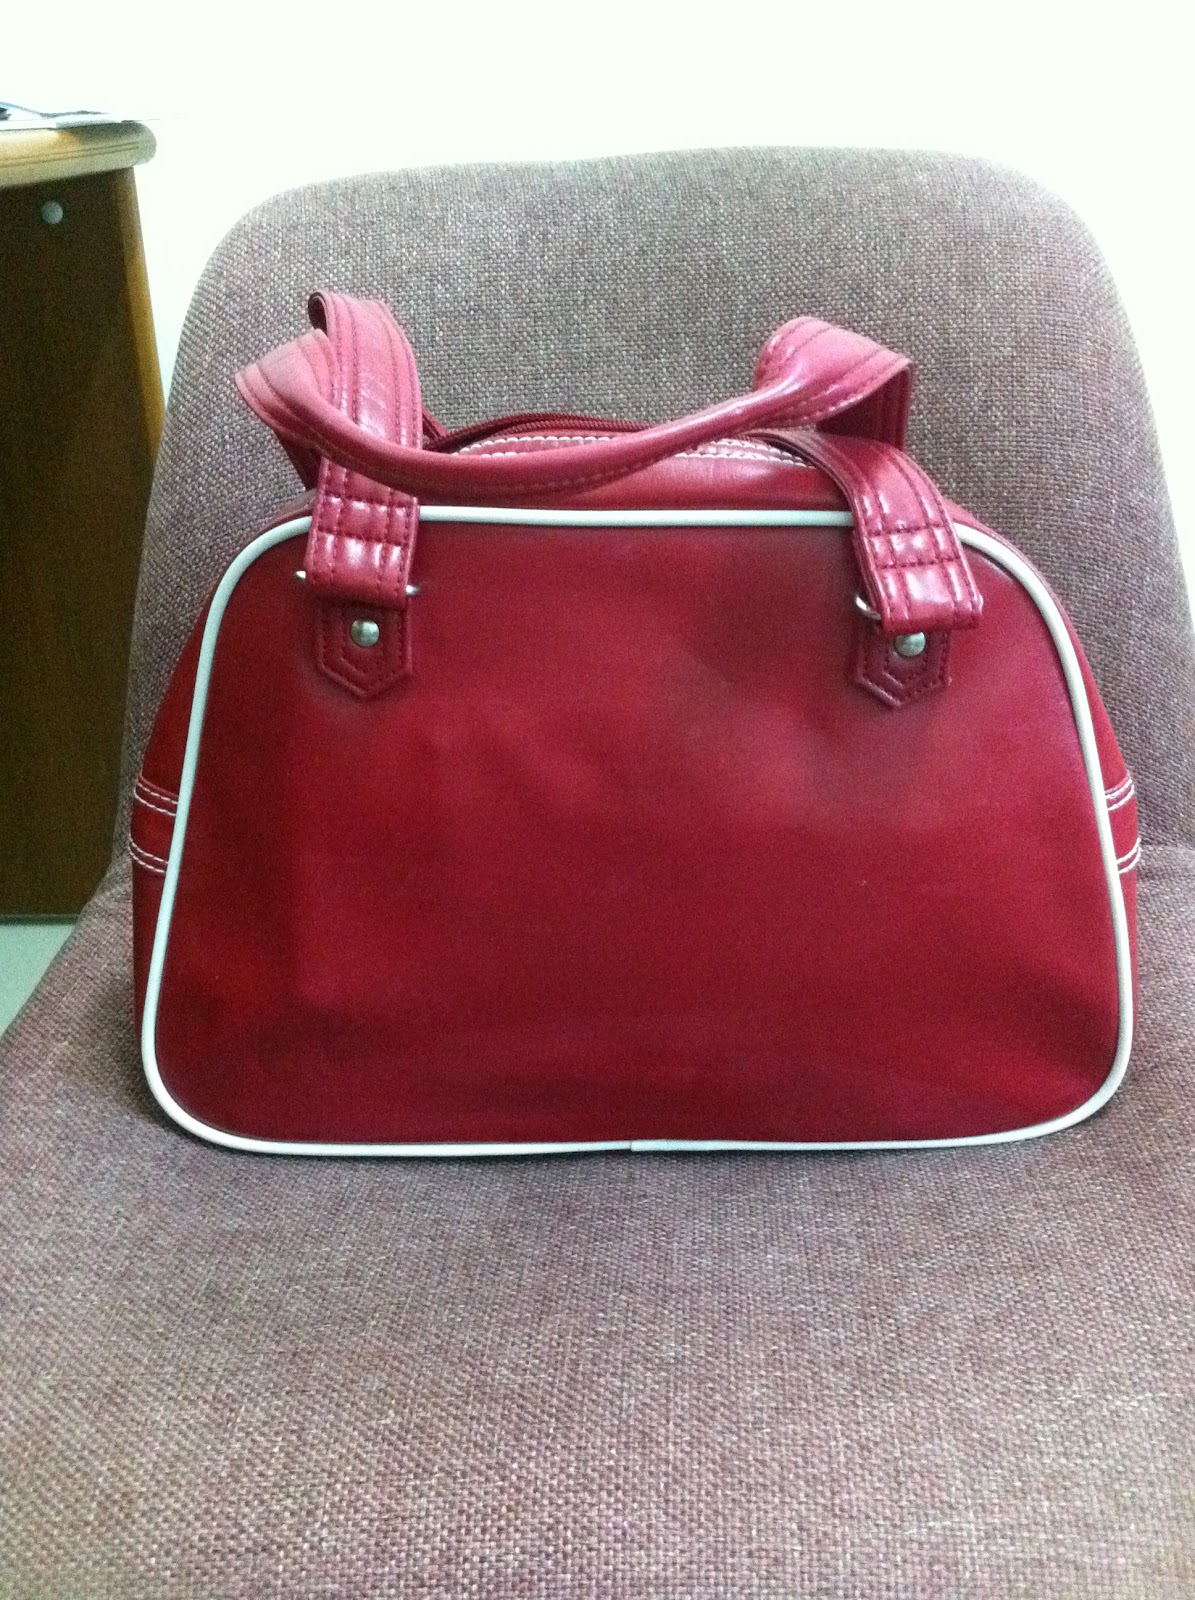 Spikynbaby Garage Sales: ADIDAS Originals Red Leather Look Retro Hand bag